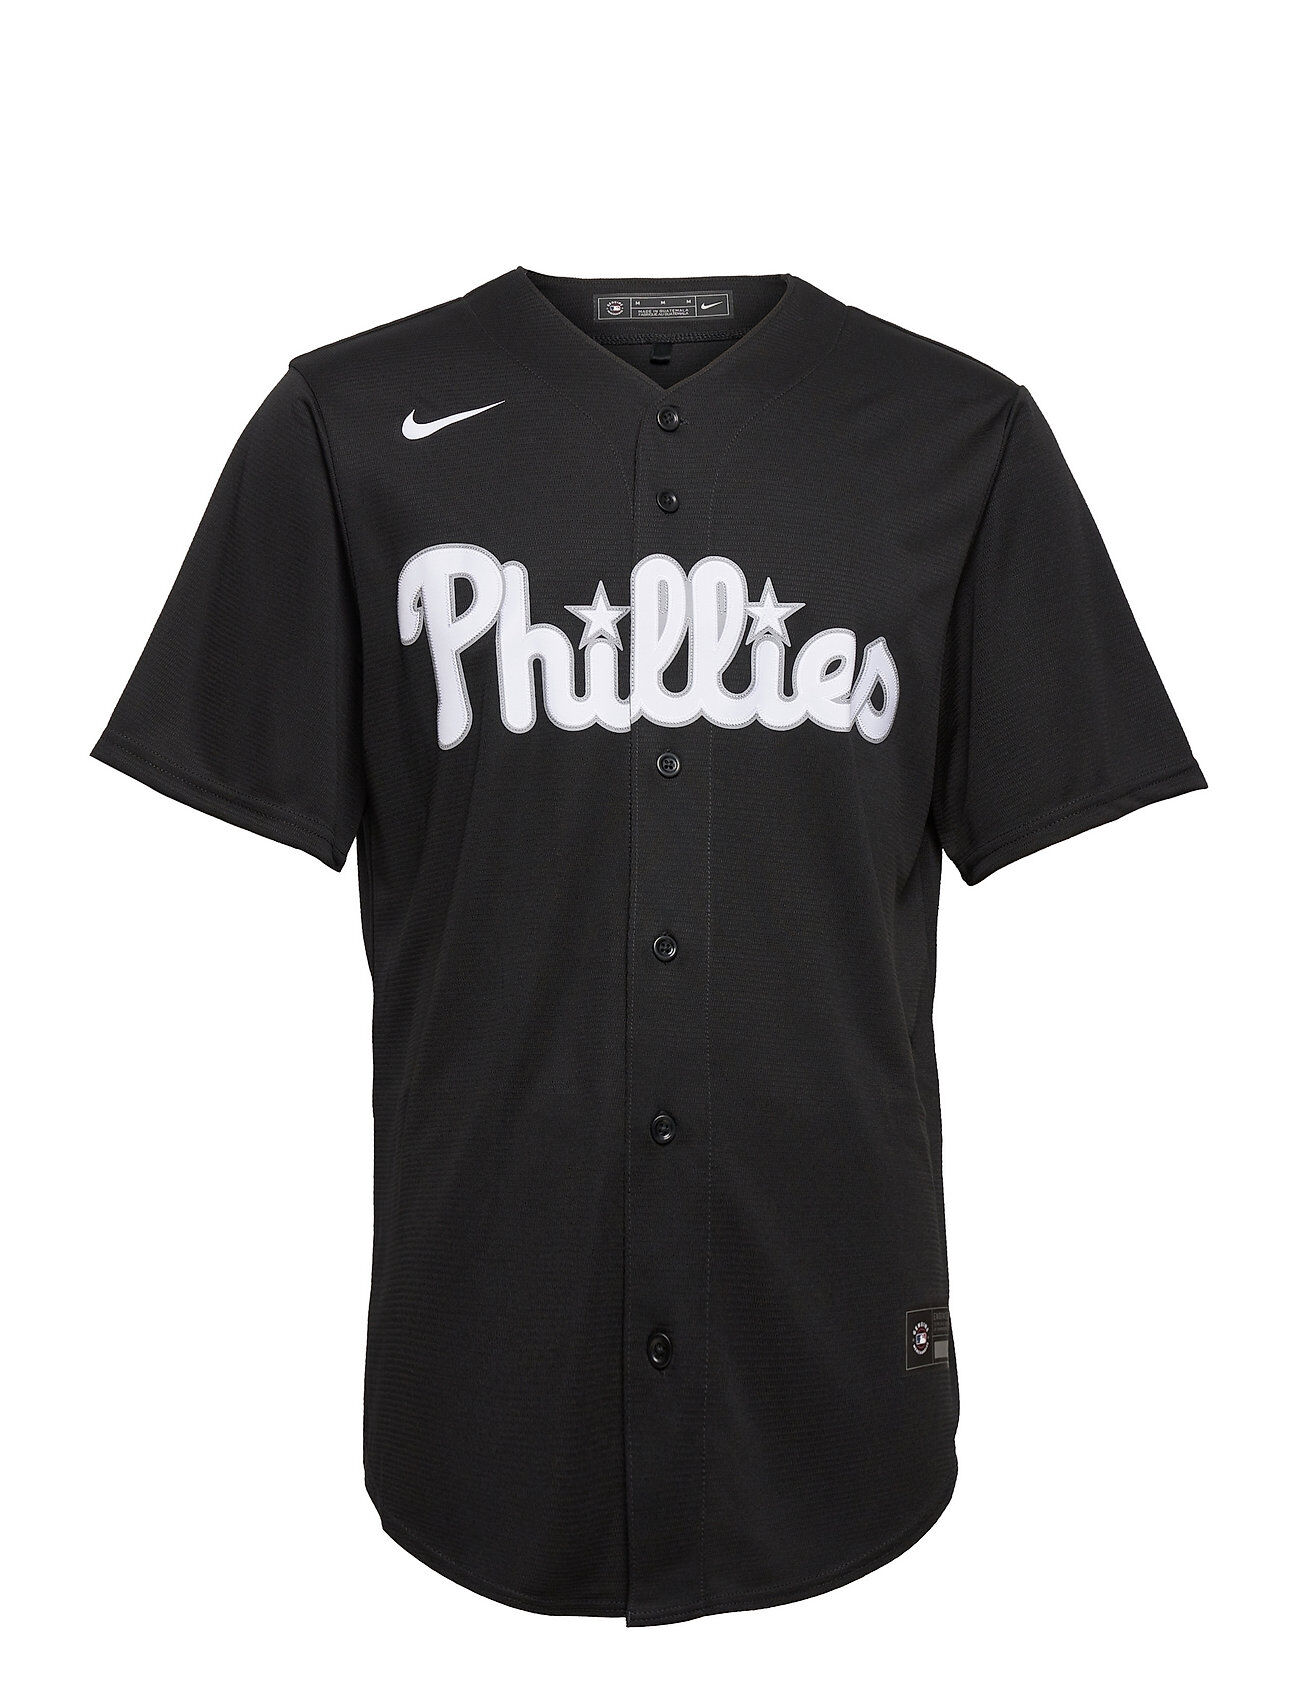 NIKE Fan Gear Philadelphia Phillies Nike Replica Fashion Jersey T-shirts Short-sleeved Svart NIKE Fan Gear